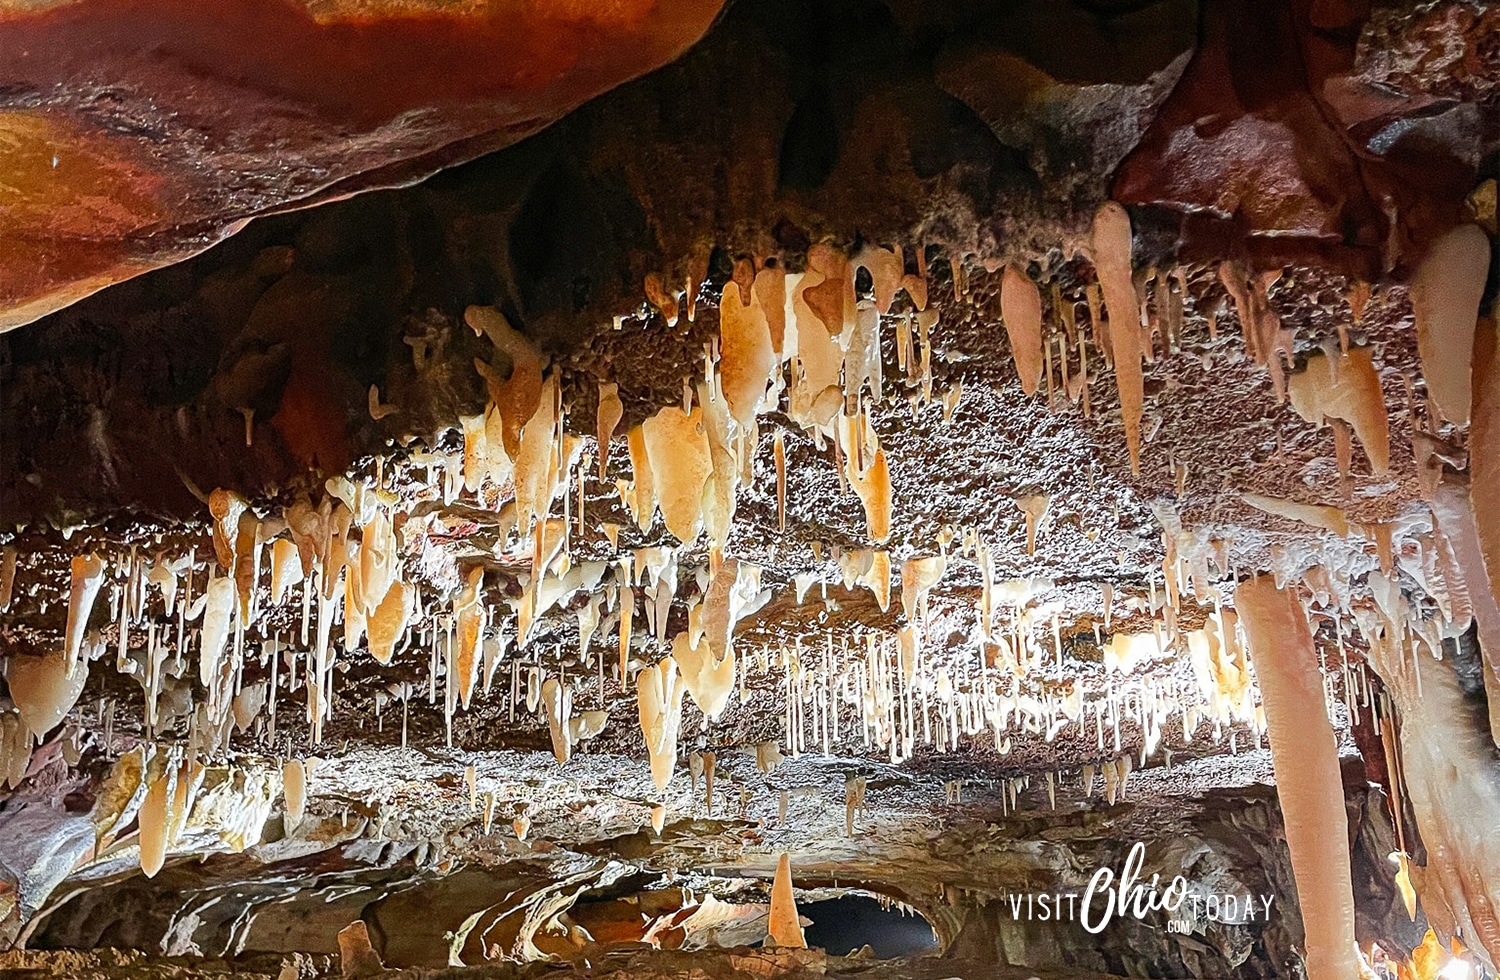 A photo of stalagmites and stalactites inside Ohio Caverns. Photo credit: Cindy Gordon of VisitOhioToday.com 